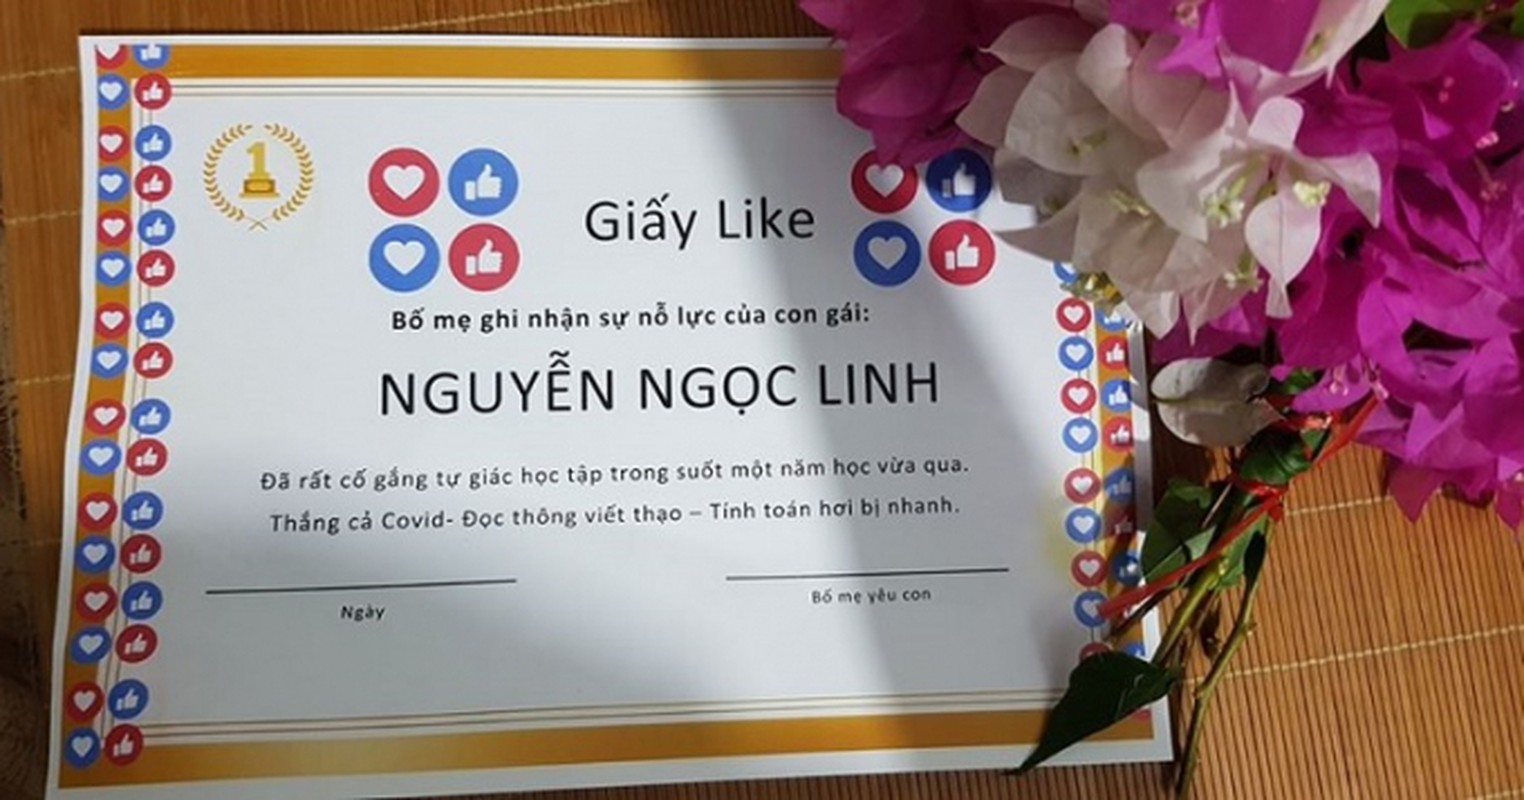 Sang tao “giay like” tang con, vi phu huynh Bac Ninh gay bao mang-Hinh-3